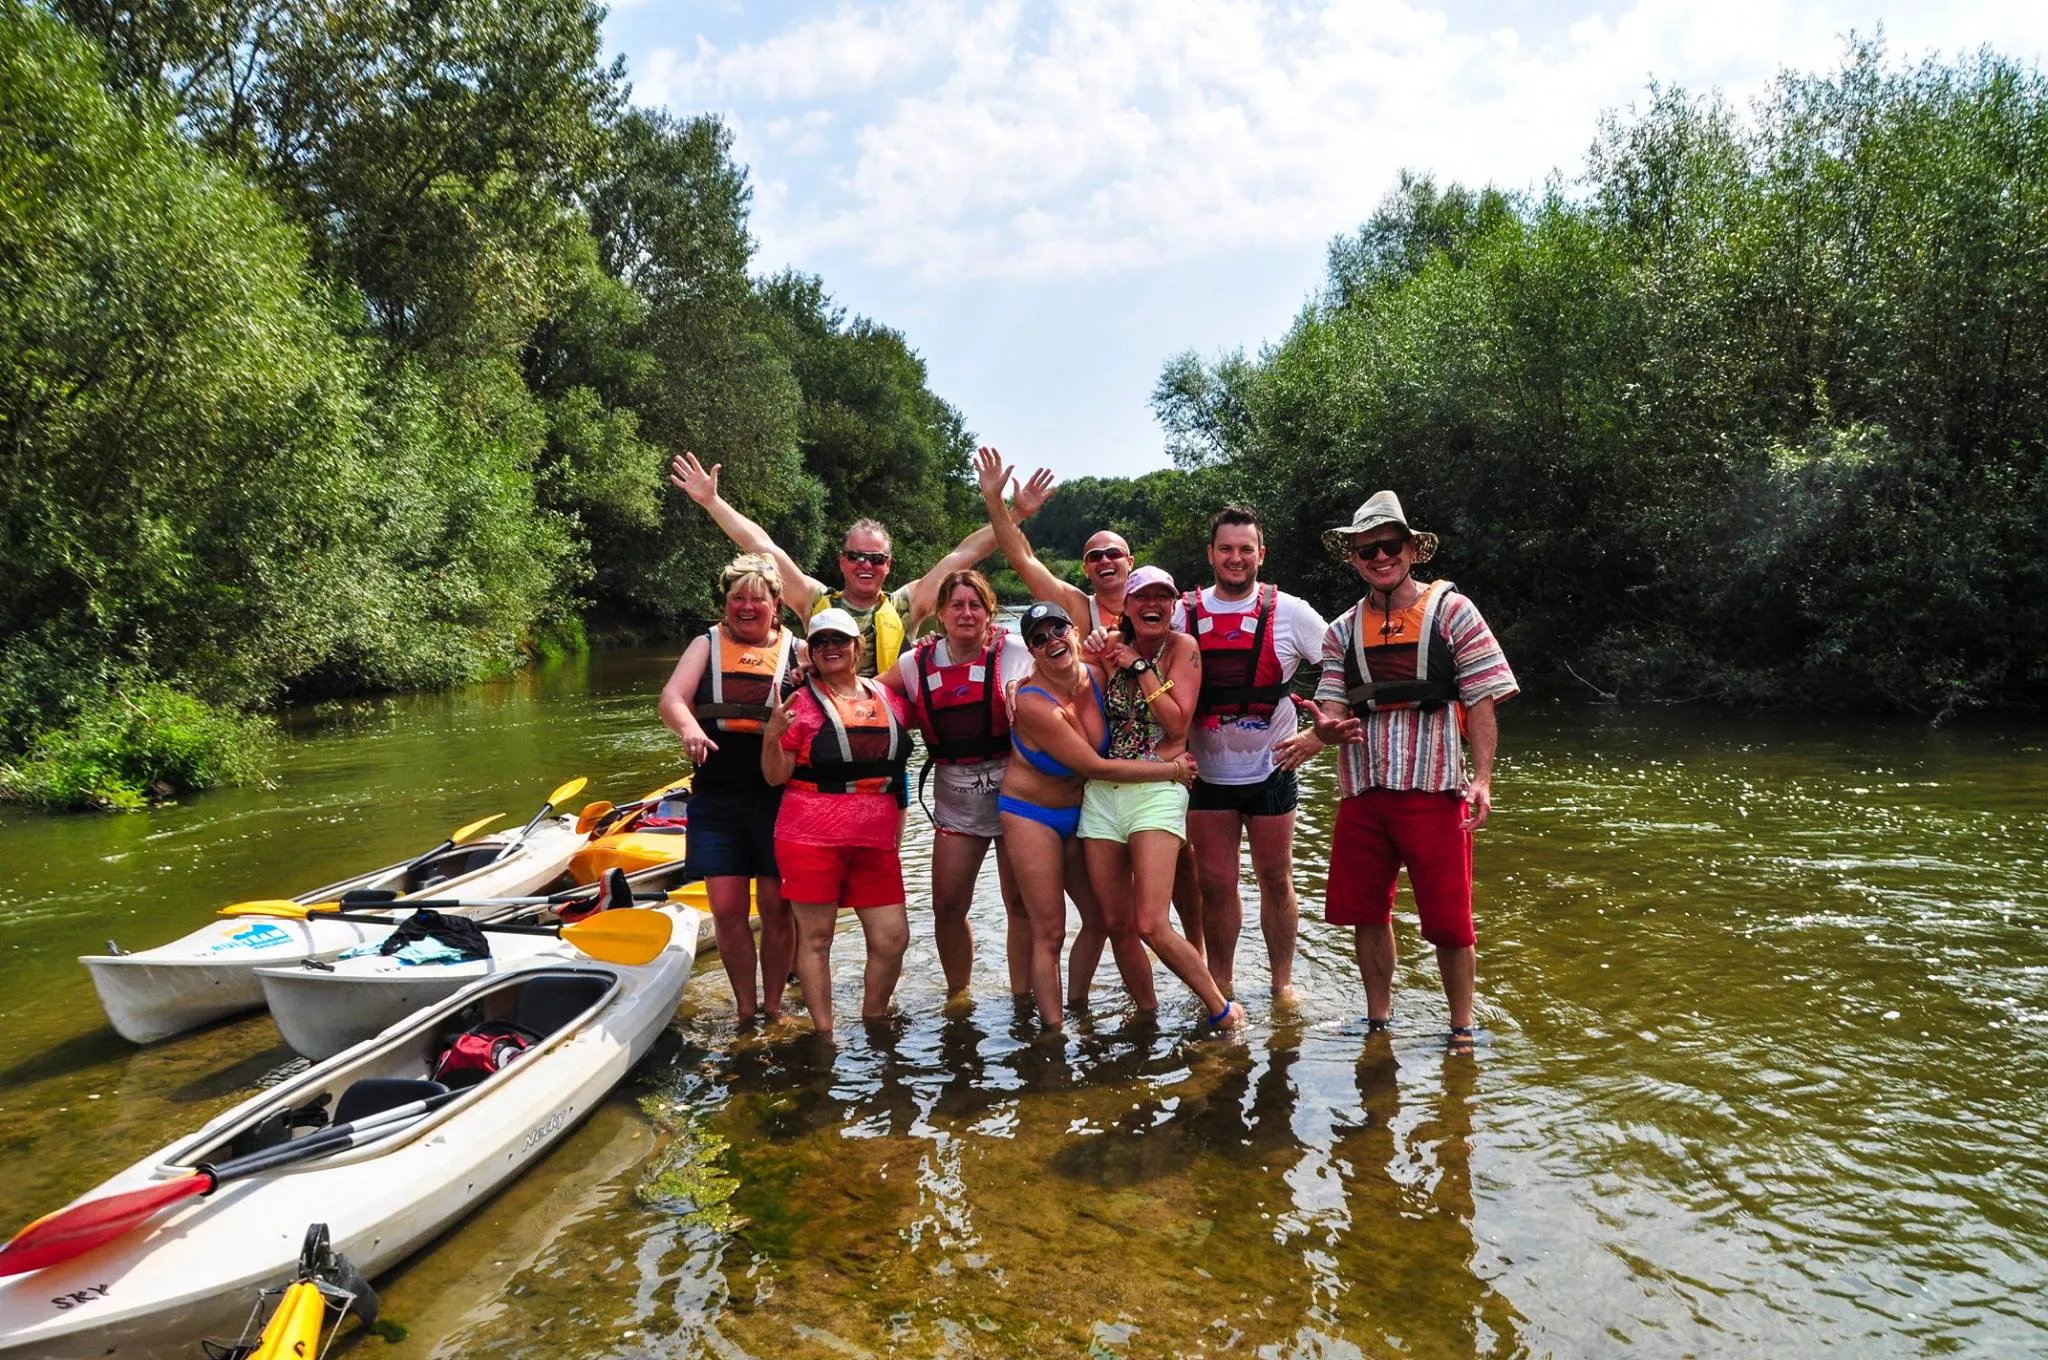 Bulteam Adventures in Bulgaria, Europe | Kayaking & Canoeing - Rated 0.8